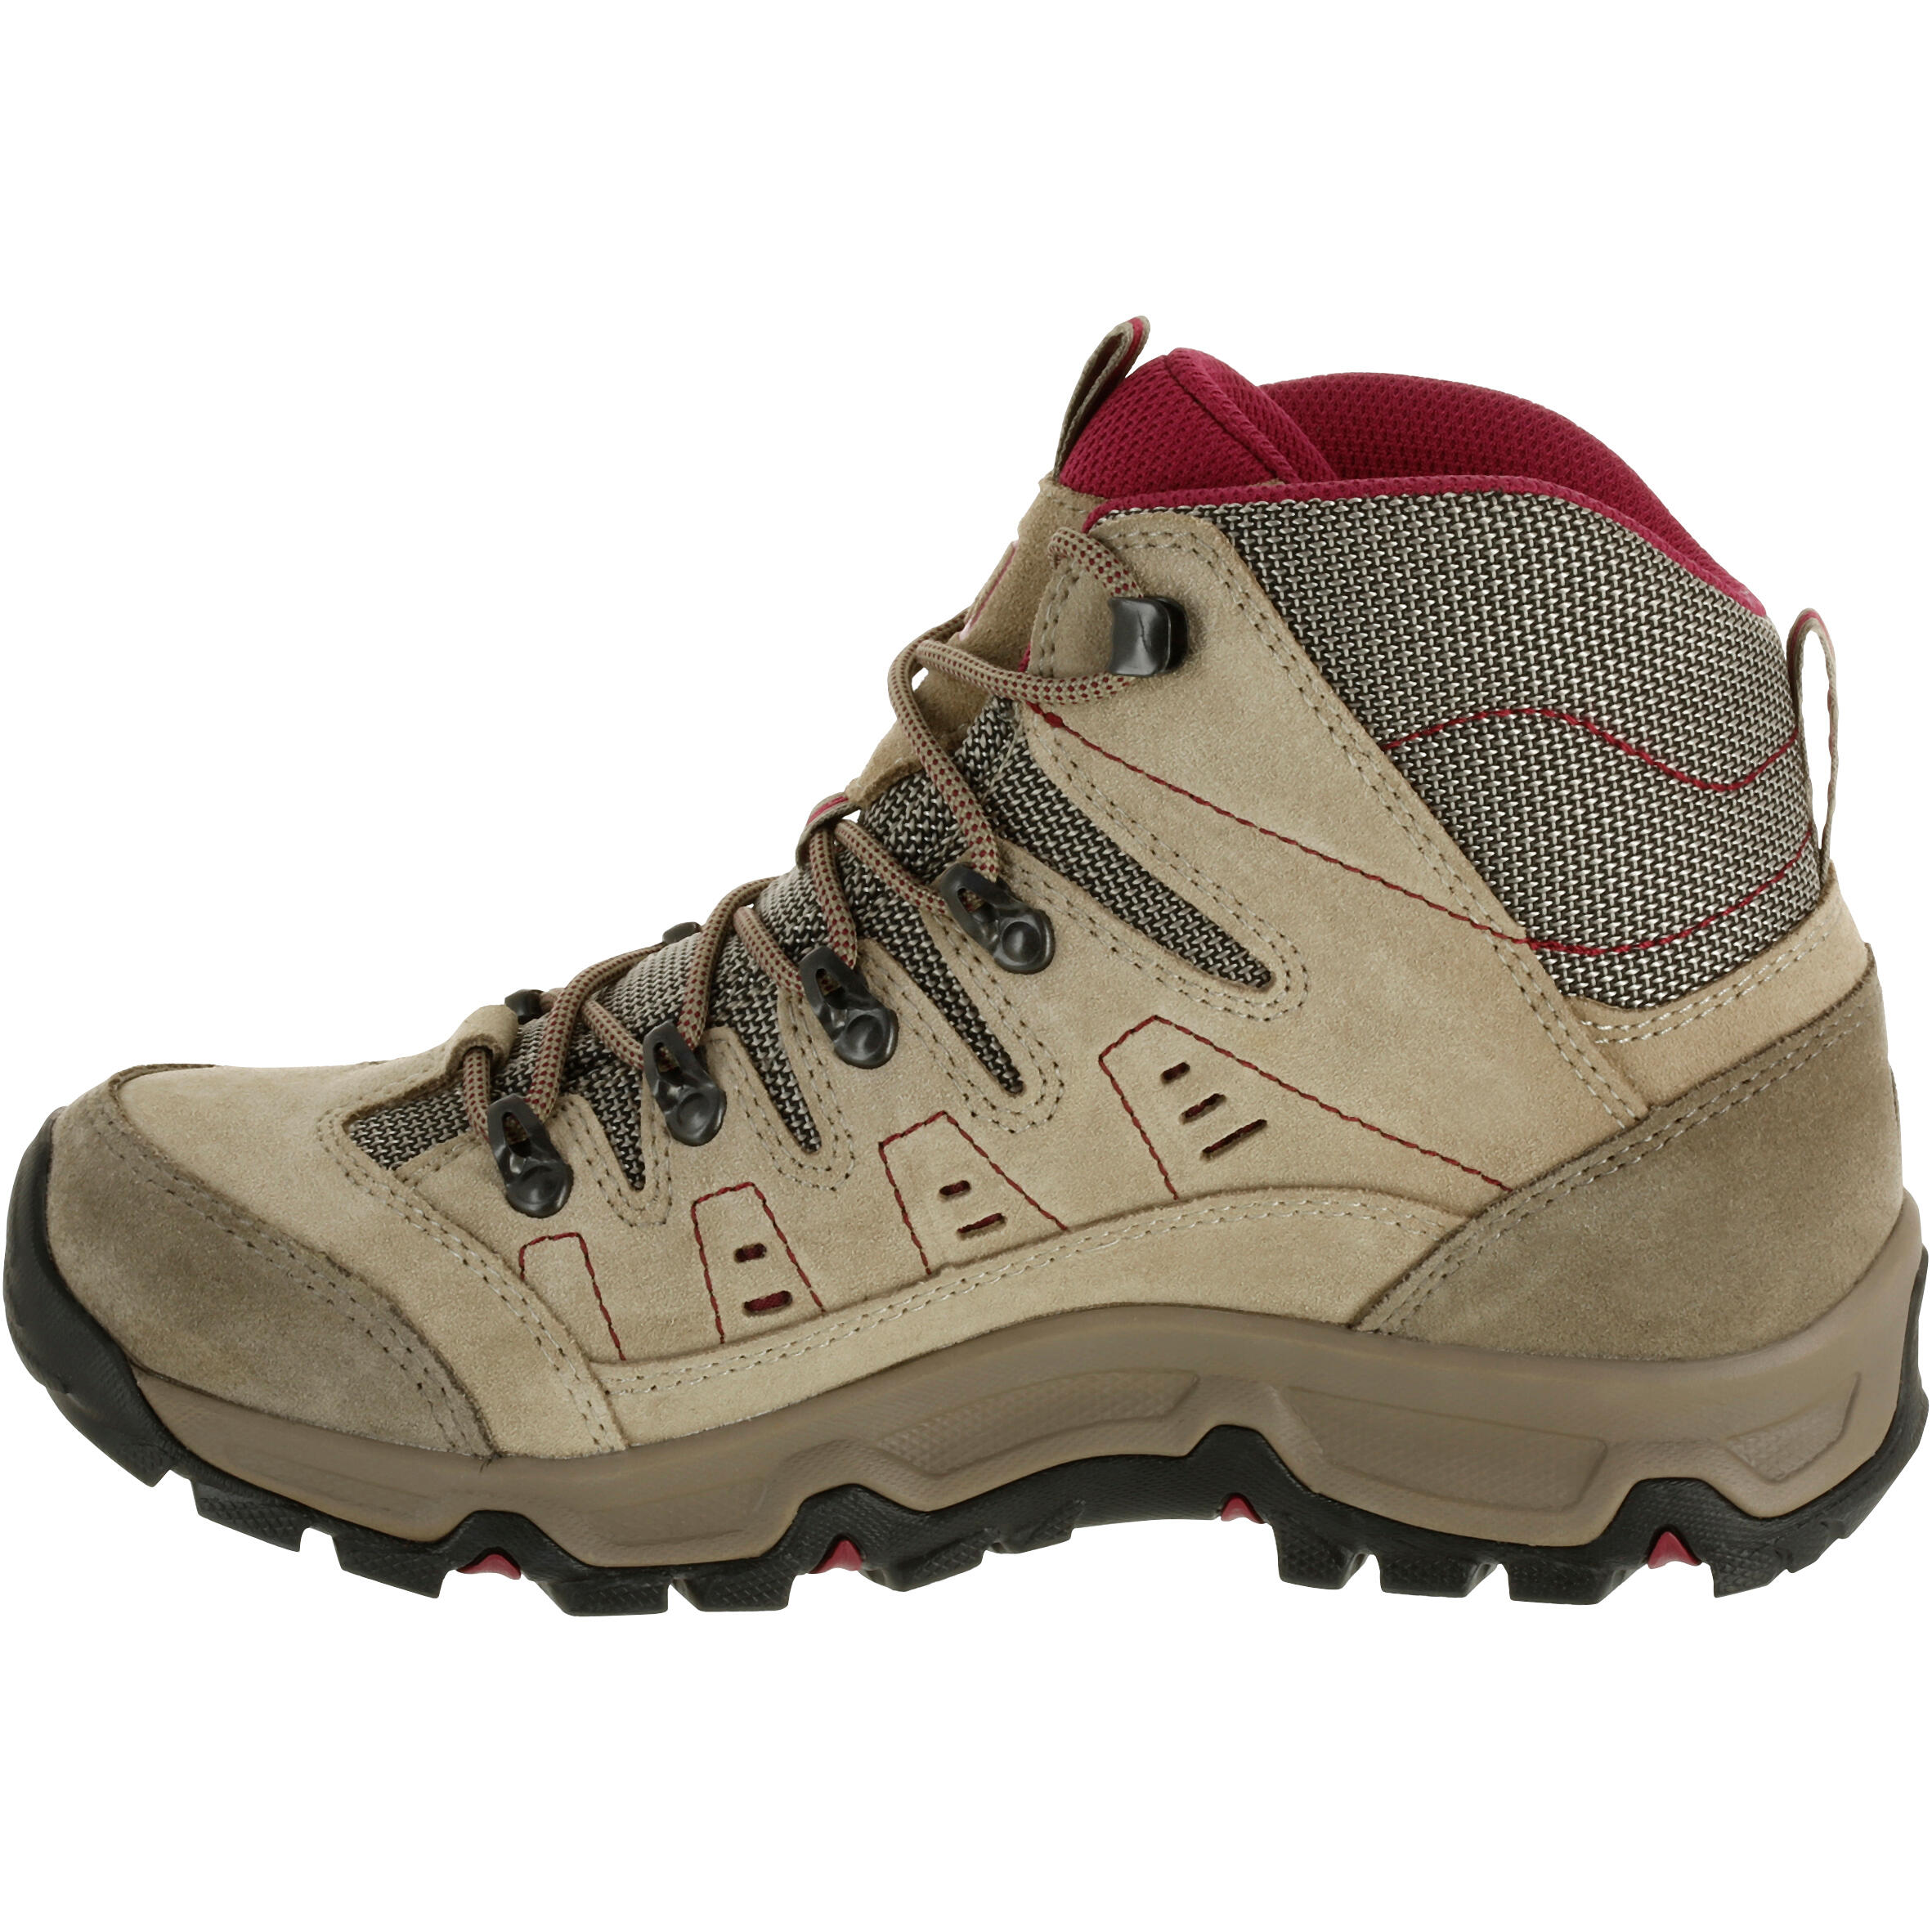 Waterproof Trekking Shoes - GORETEX - VIBRAM-TECNICA STARCROSS - W Beige 2/13